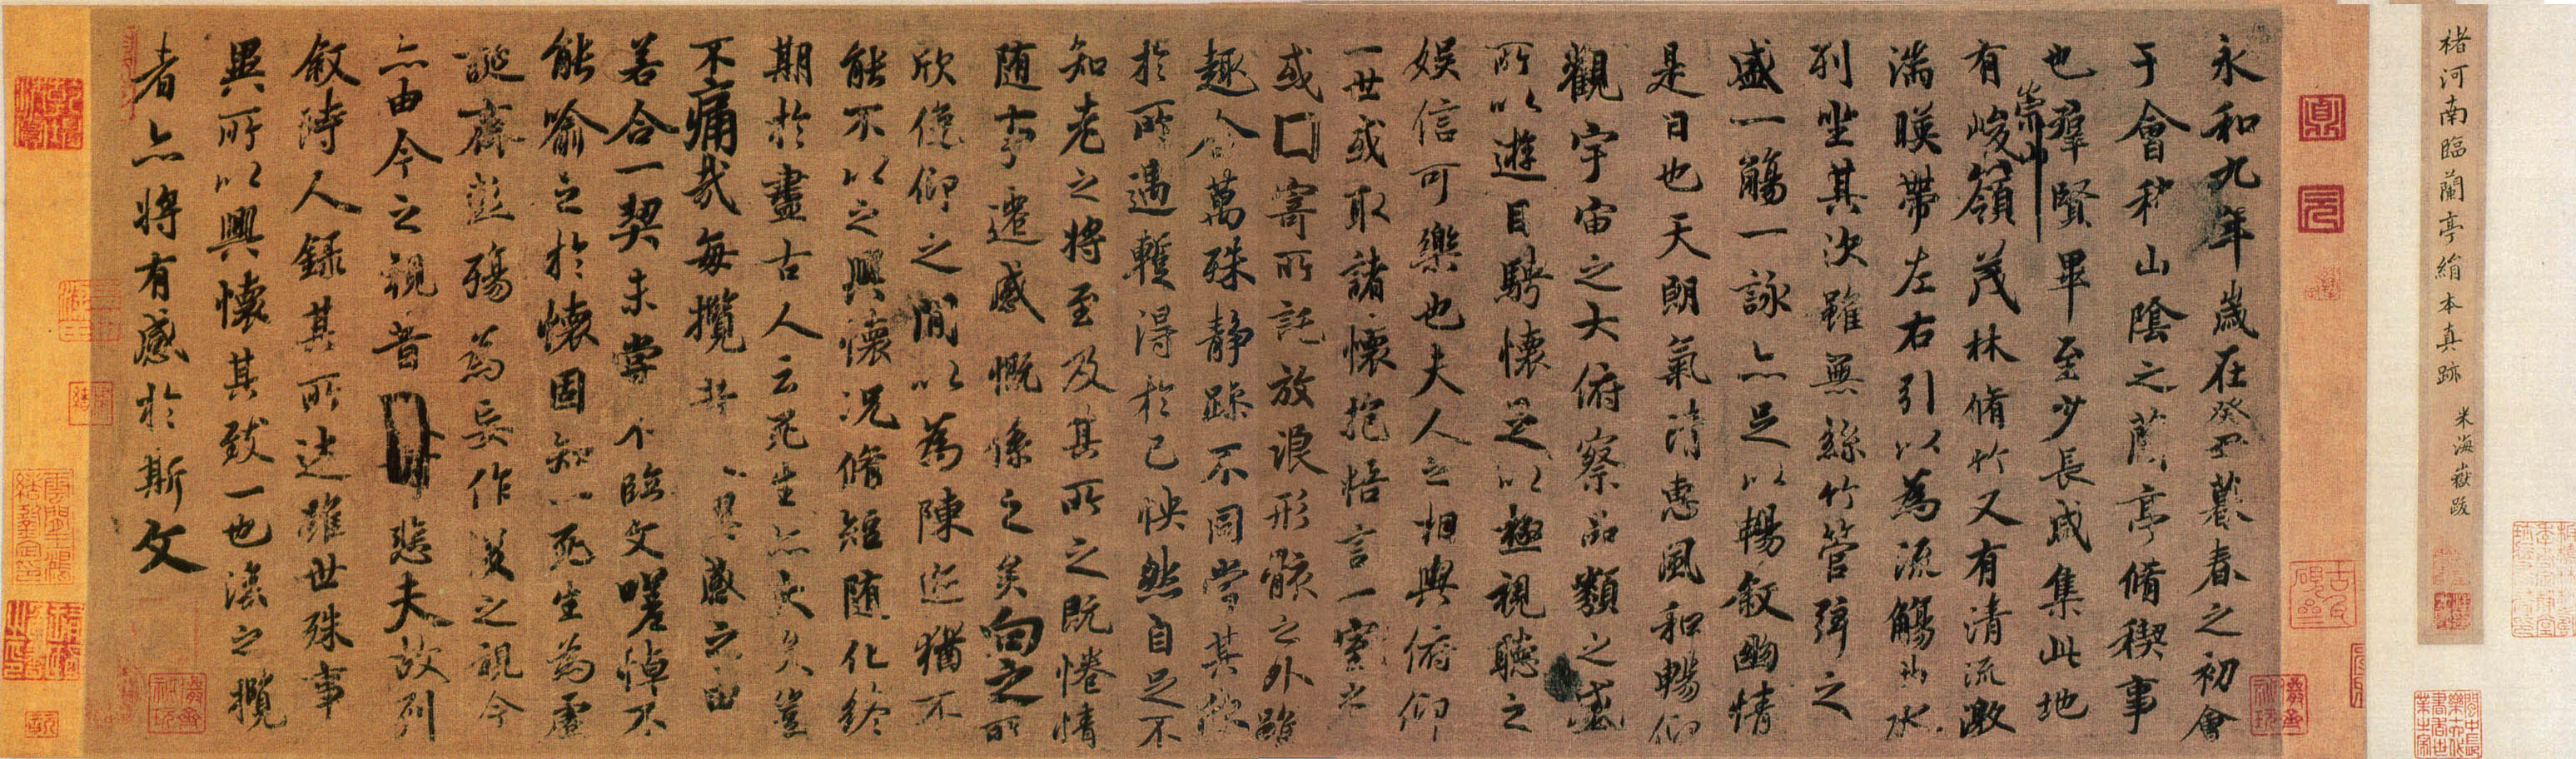 褚遂良《临兰亭序》卷-台北故宫博物院藏(图1)